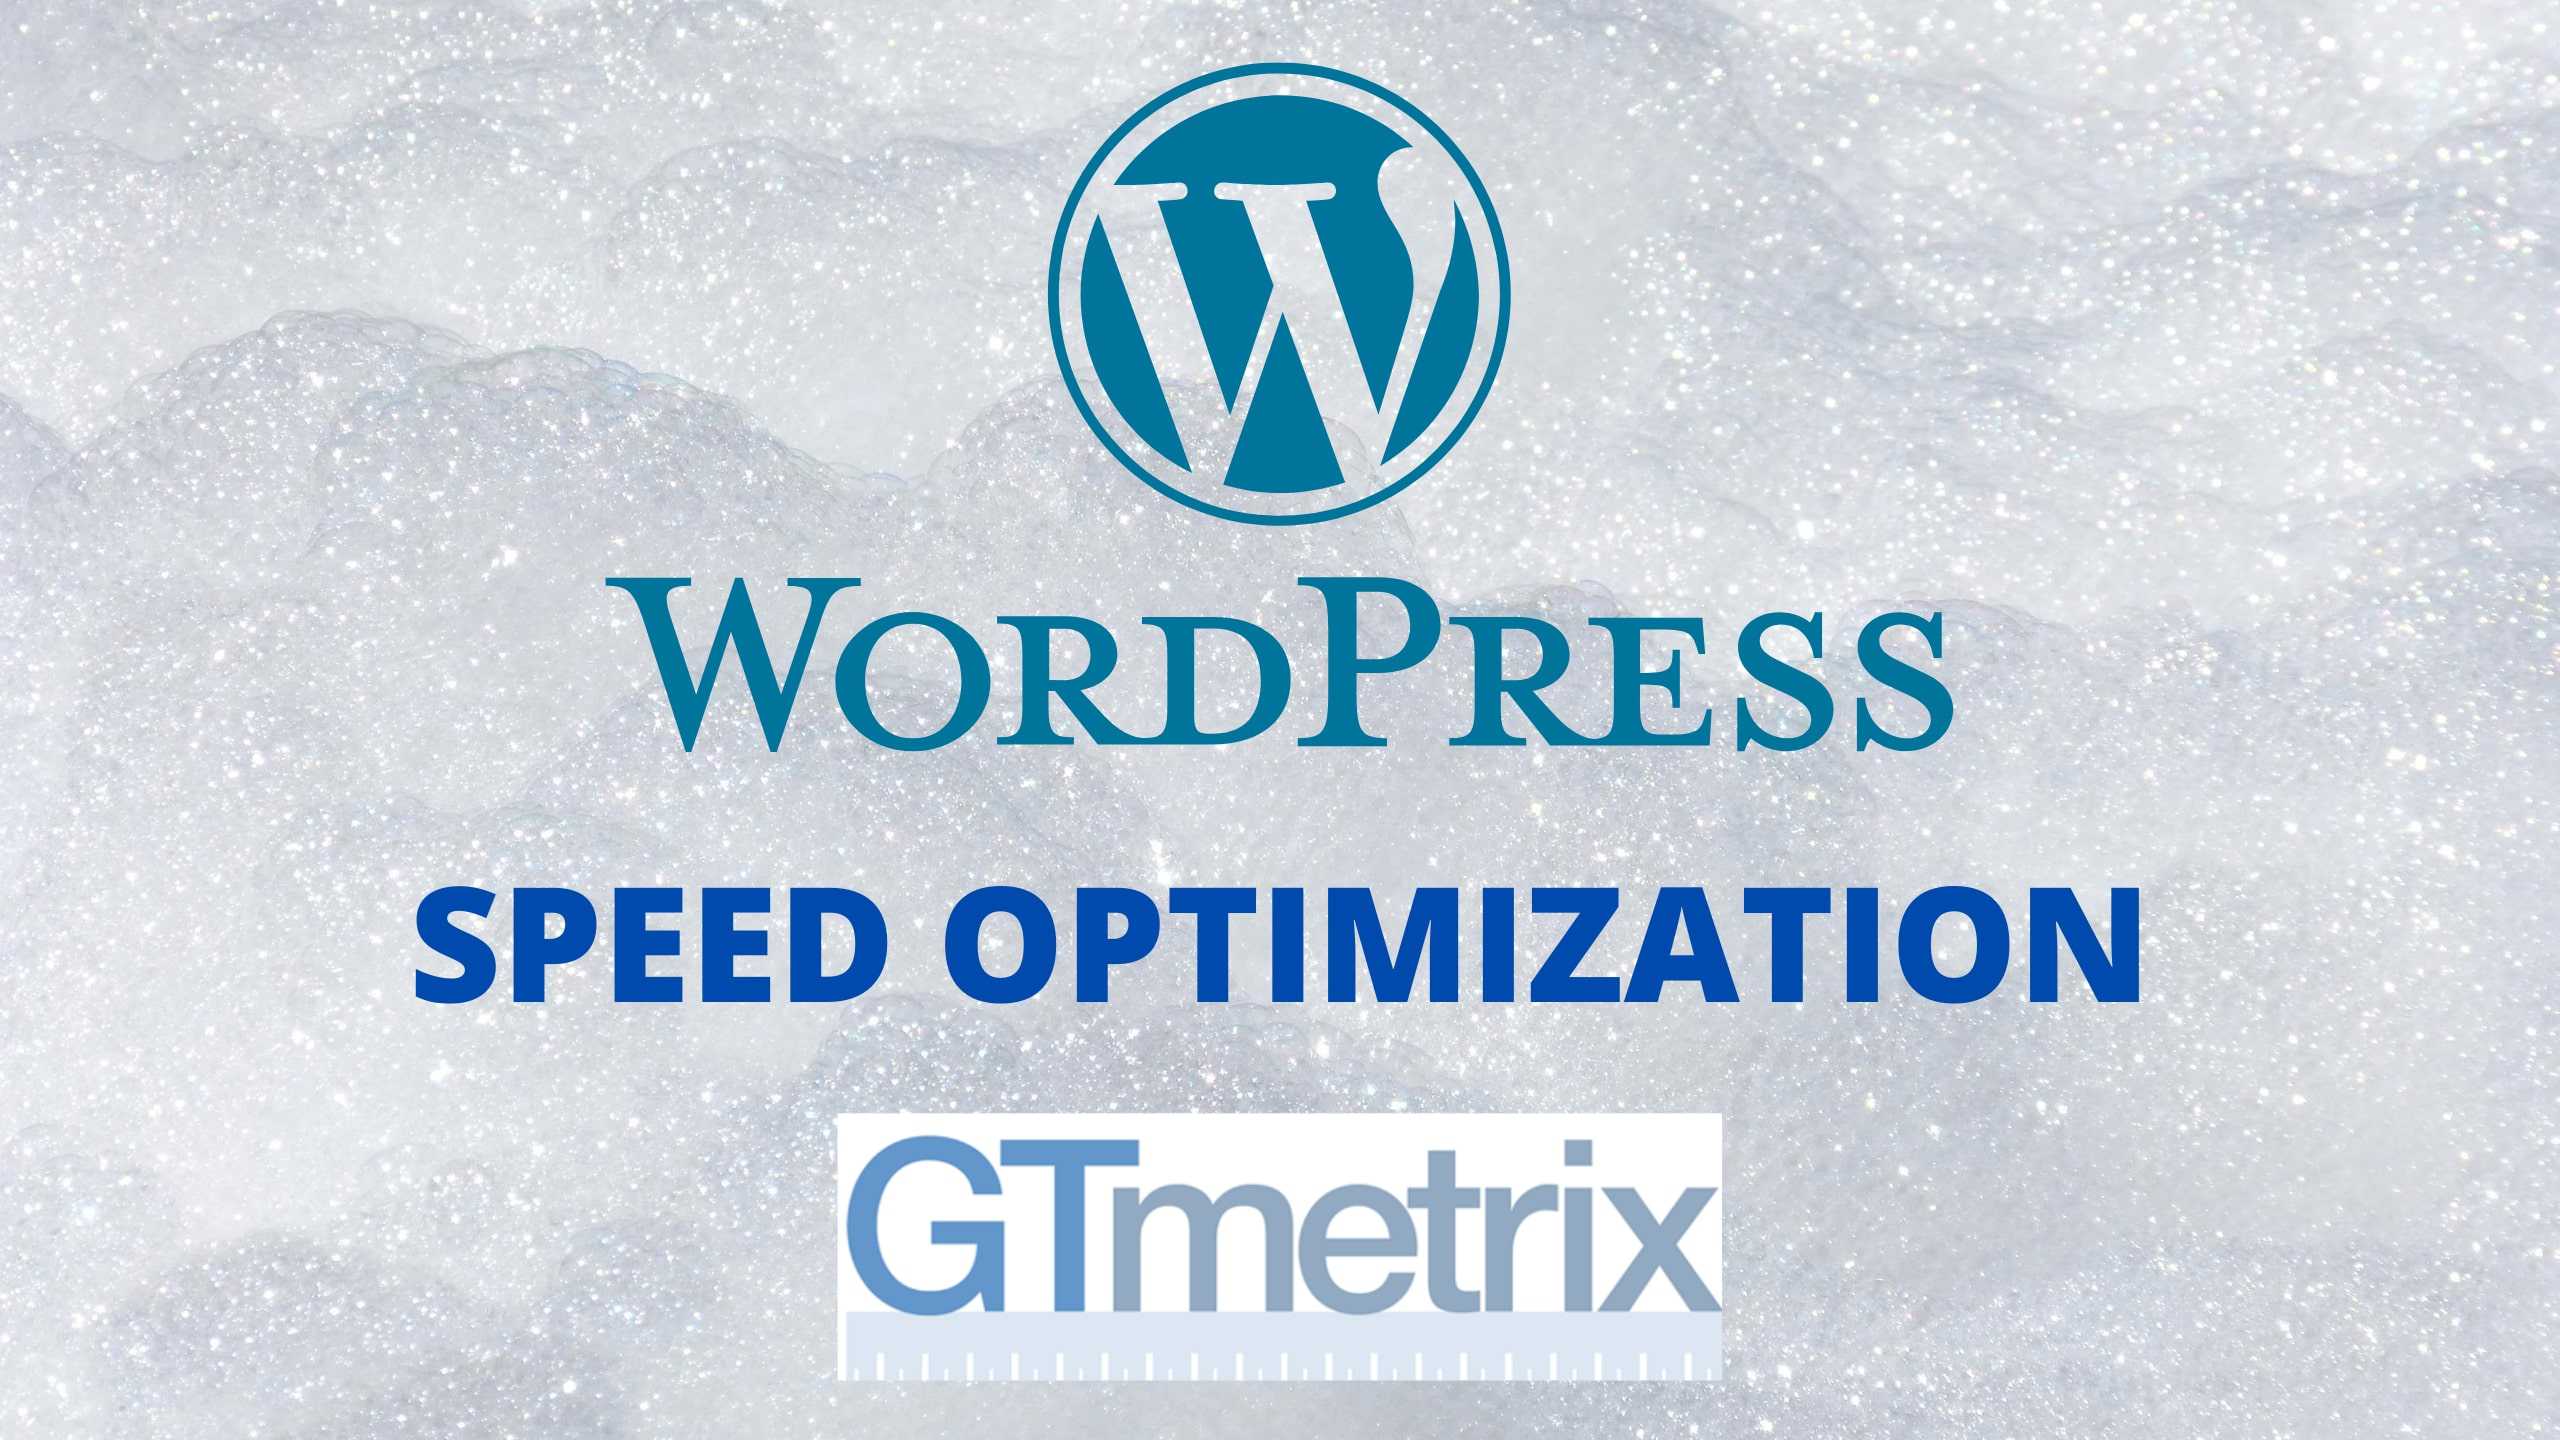 How to Speed Up WordPress Website?